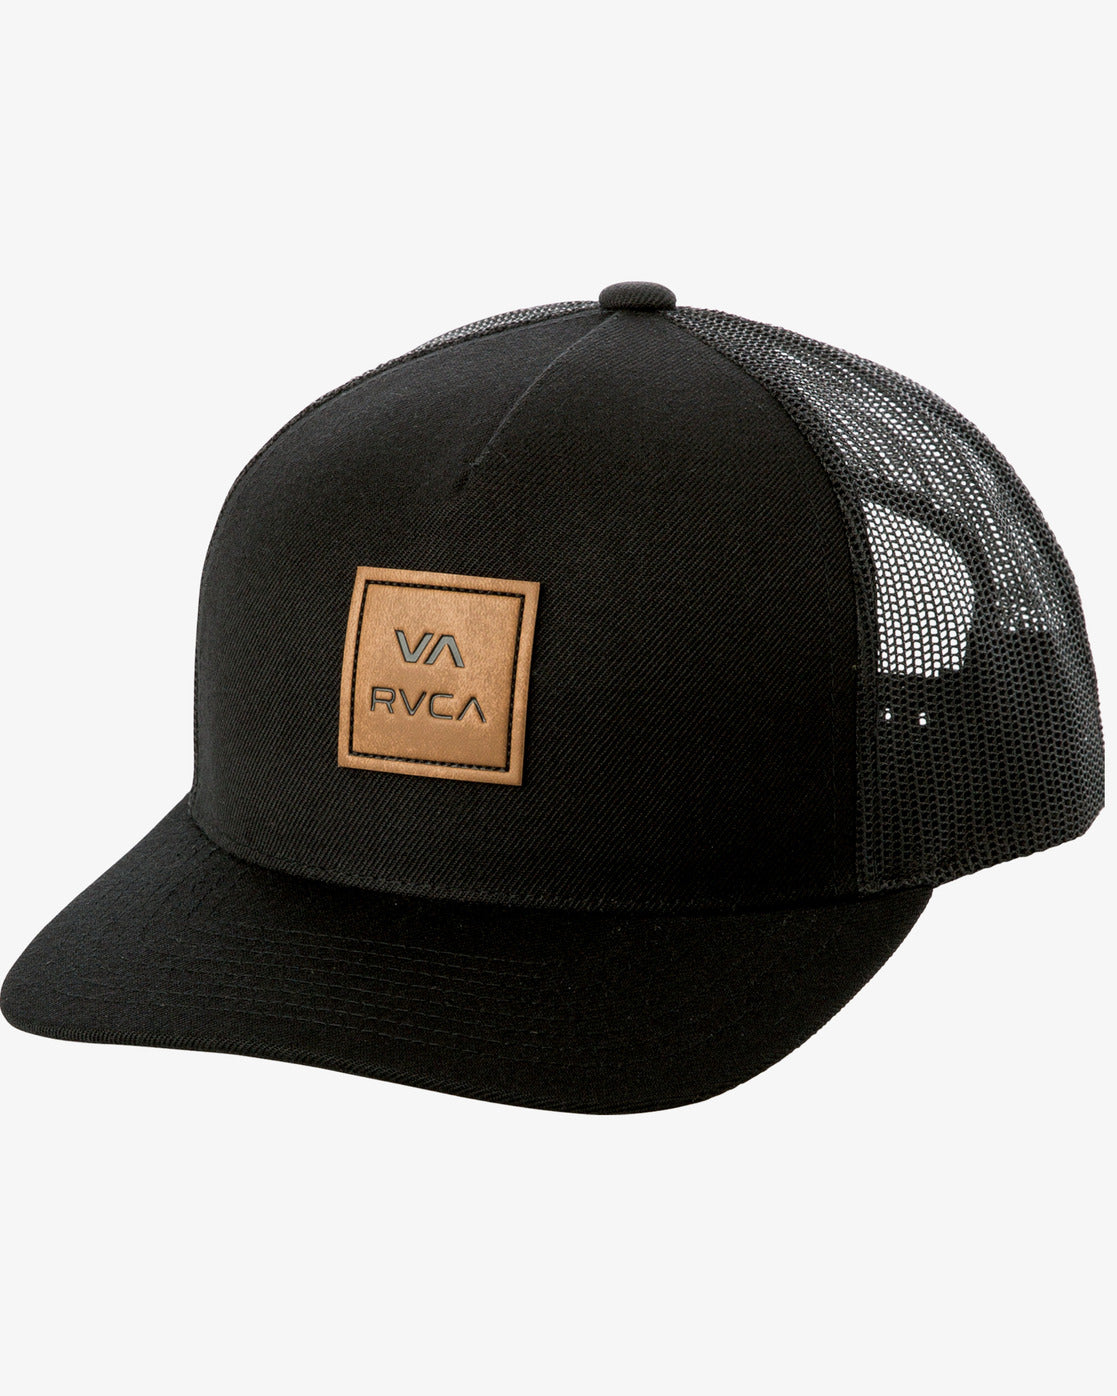 RVCA VA All The Way Curved Brim Trucker Hat BLACK